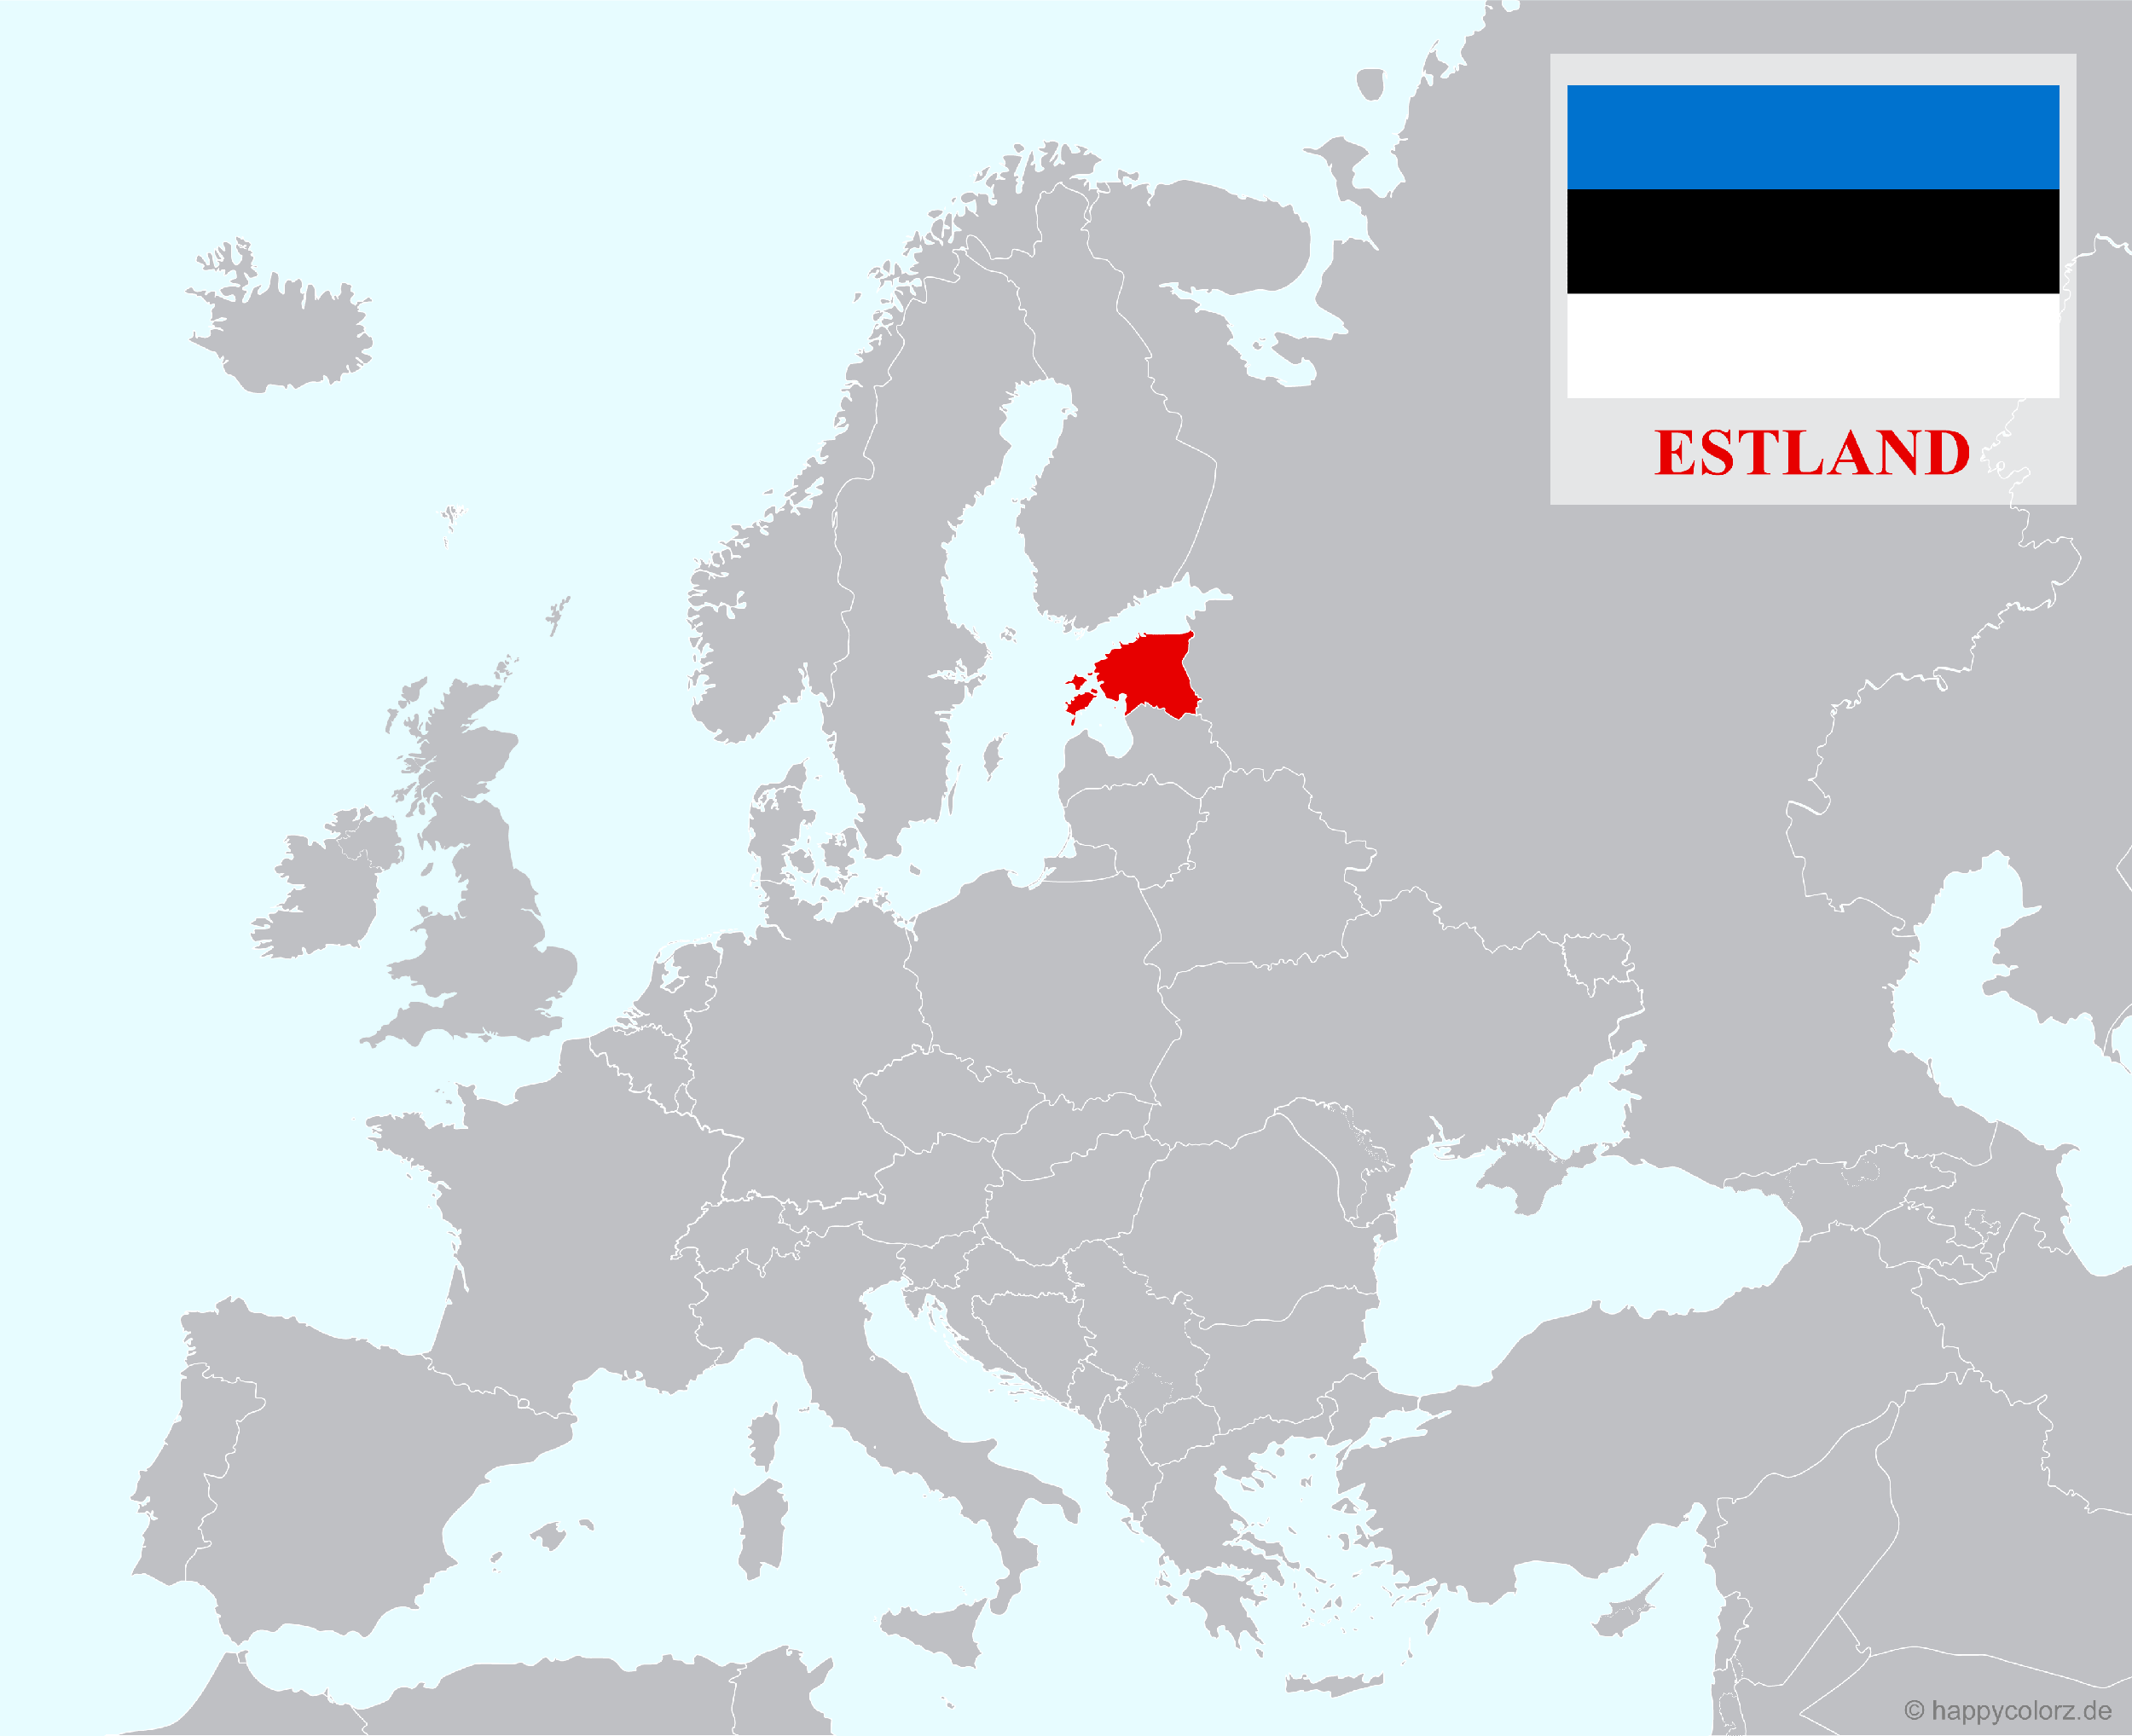 Europakarte mit Estland als hervorgehobenes Land